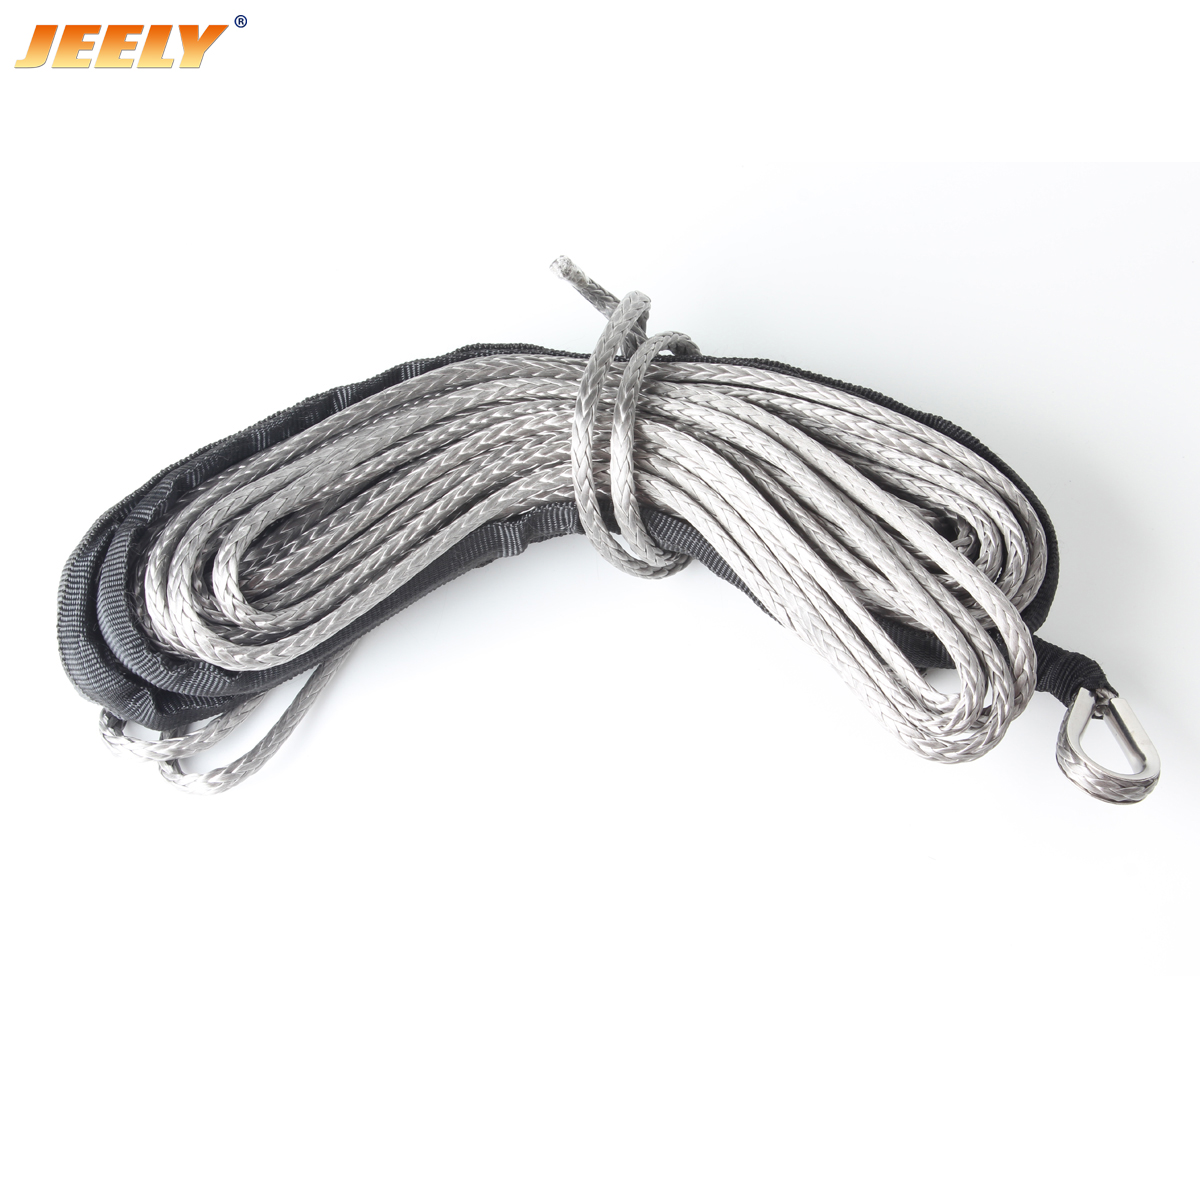 jeely 3mm * 24m超高编织编织绞车线代替钢丝绳沙滩车绞盘绳